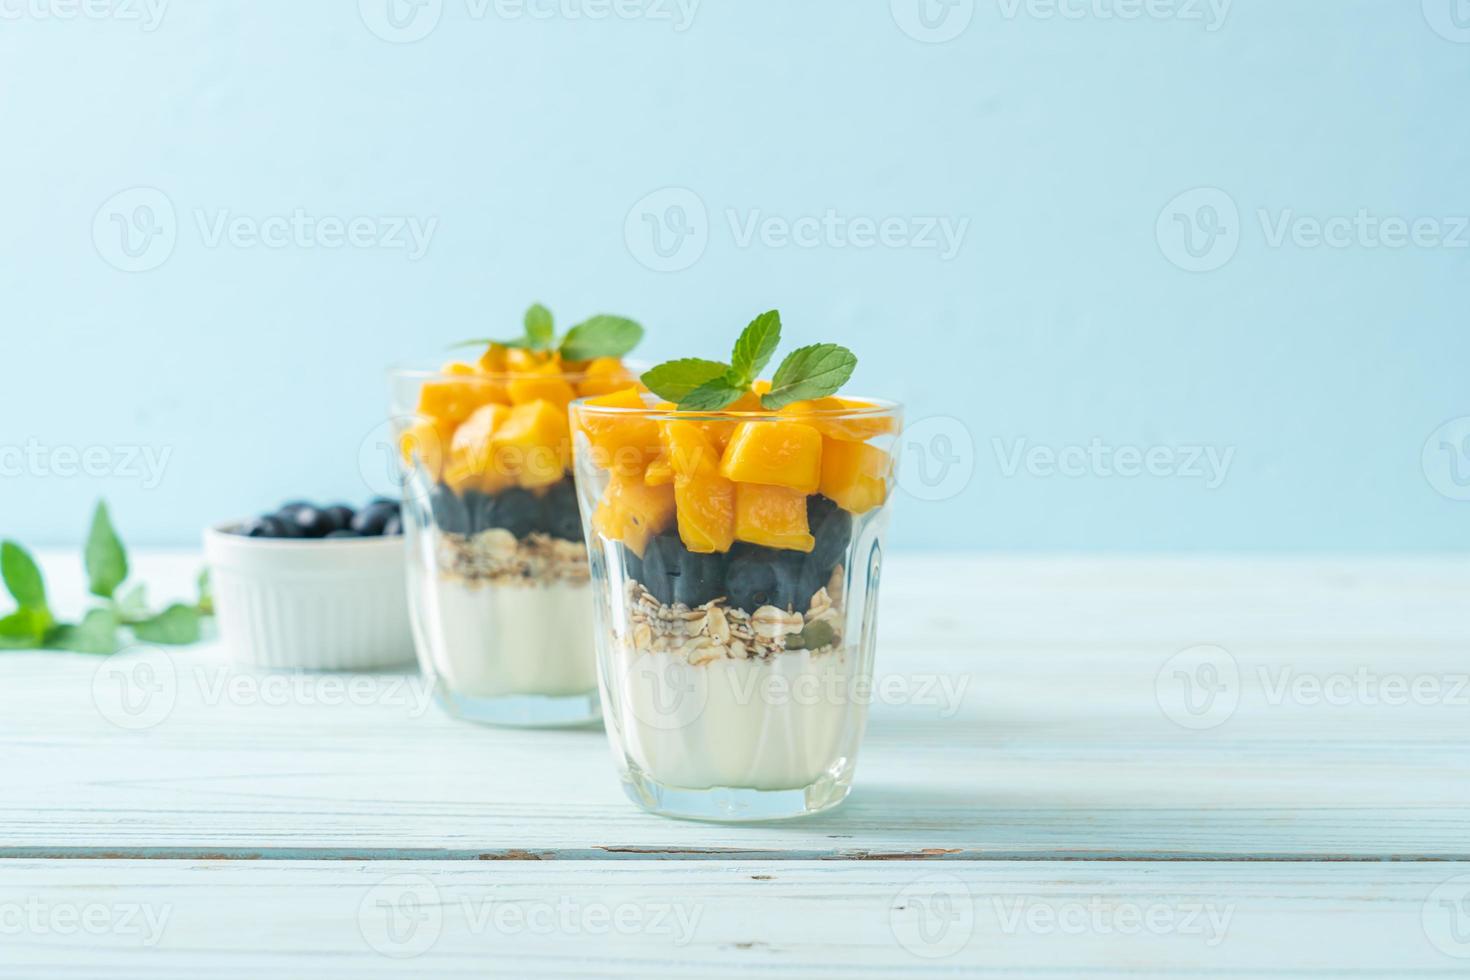 hausgemachte frische Mango und frische Heidelbeeren mit Joghurt und Müsli - gesunder Ernährungsstil foto